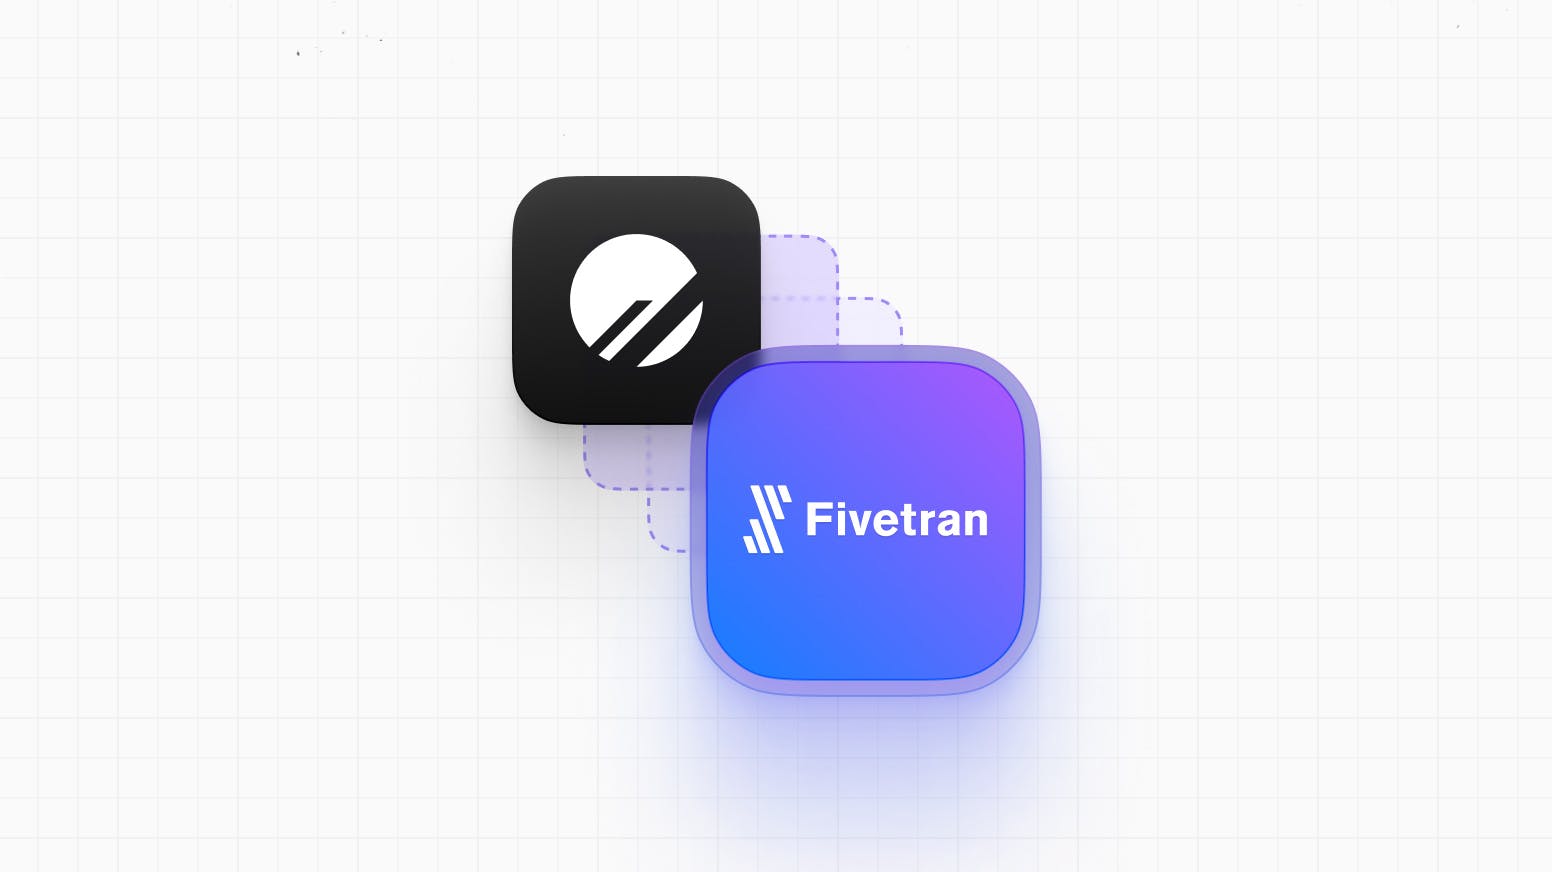 Announcing the Fivetran integration